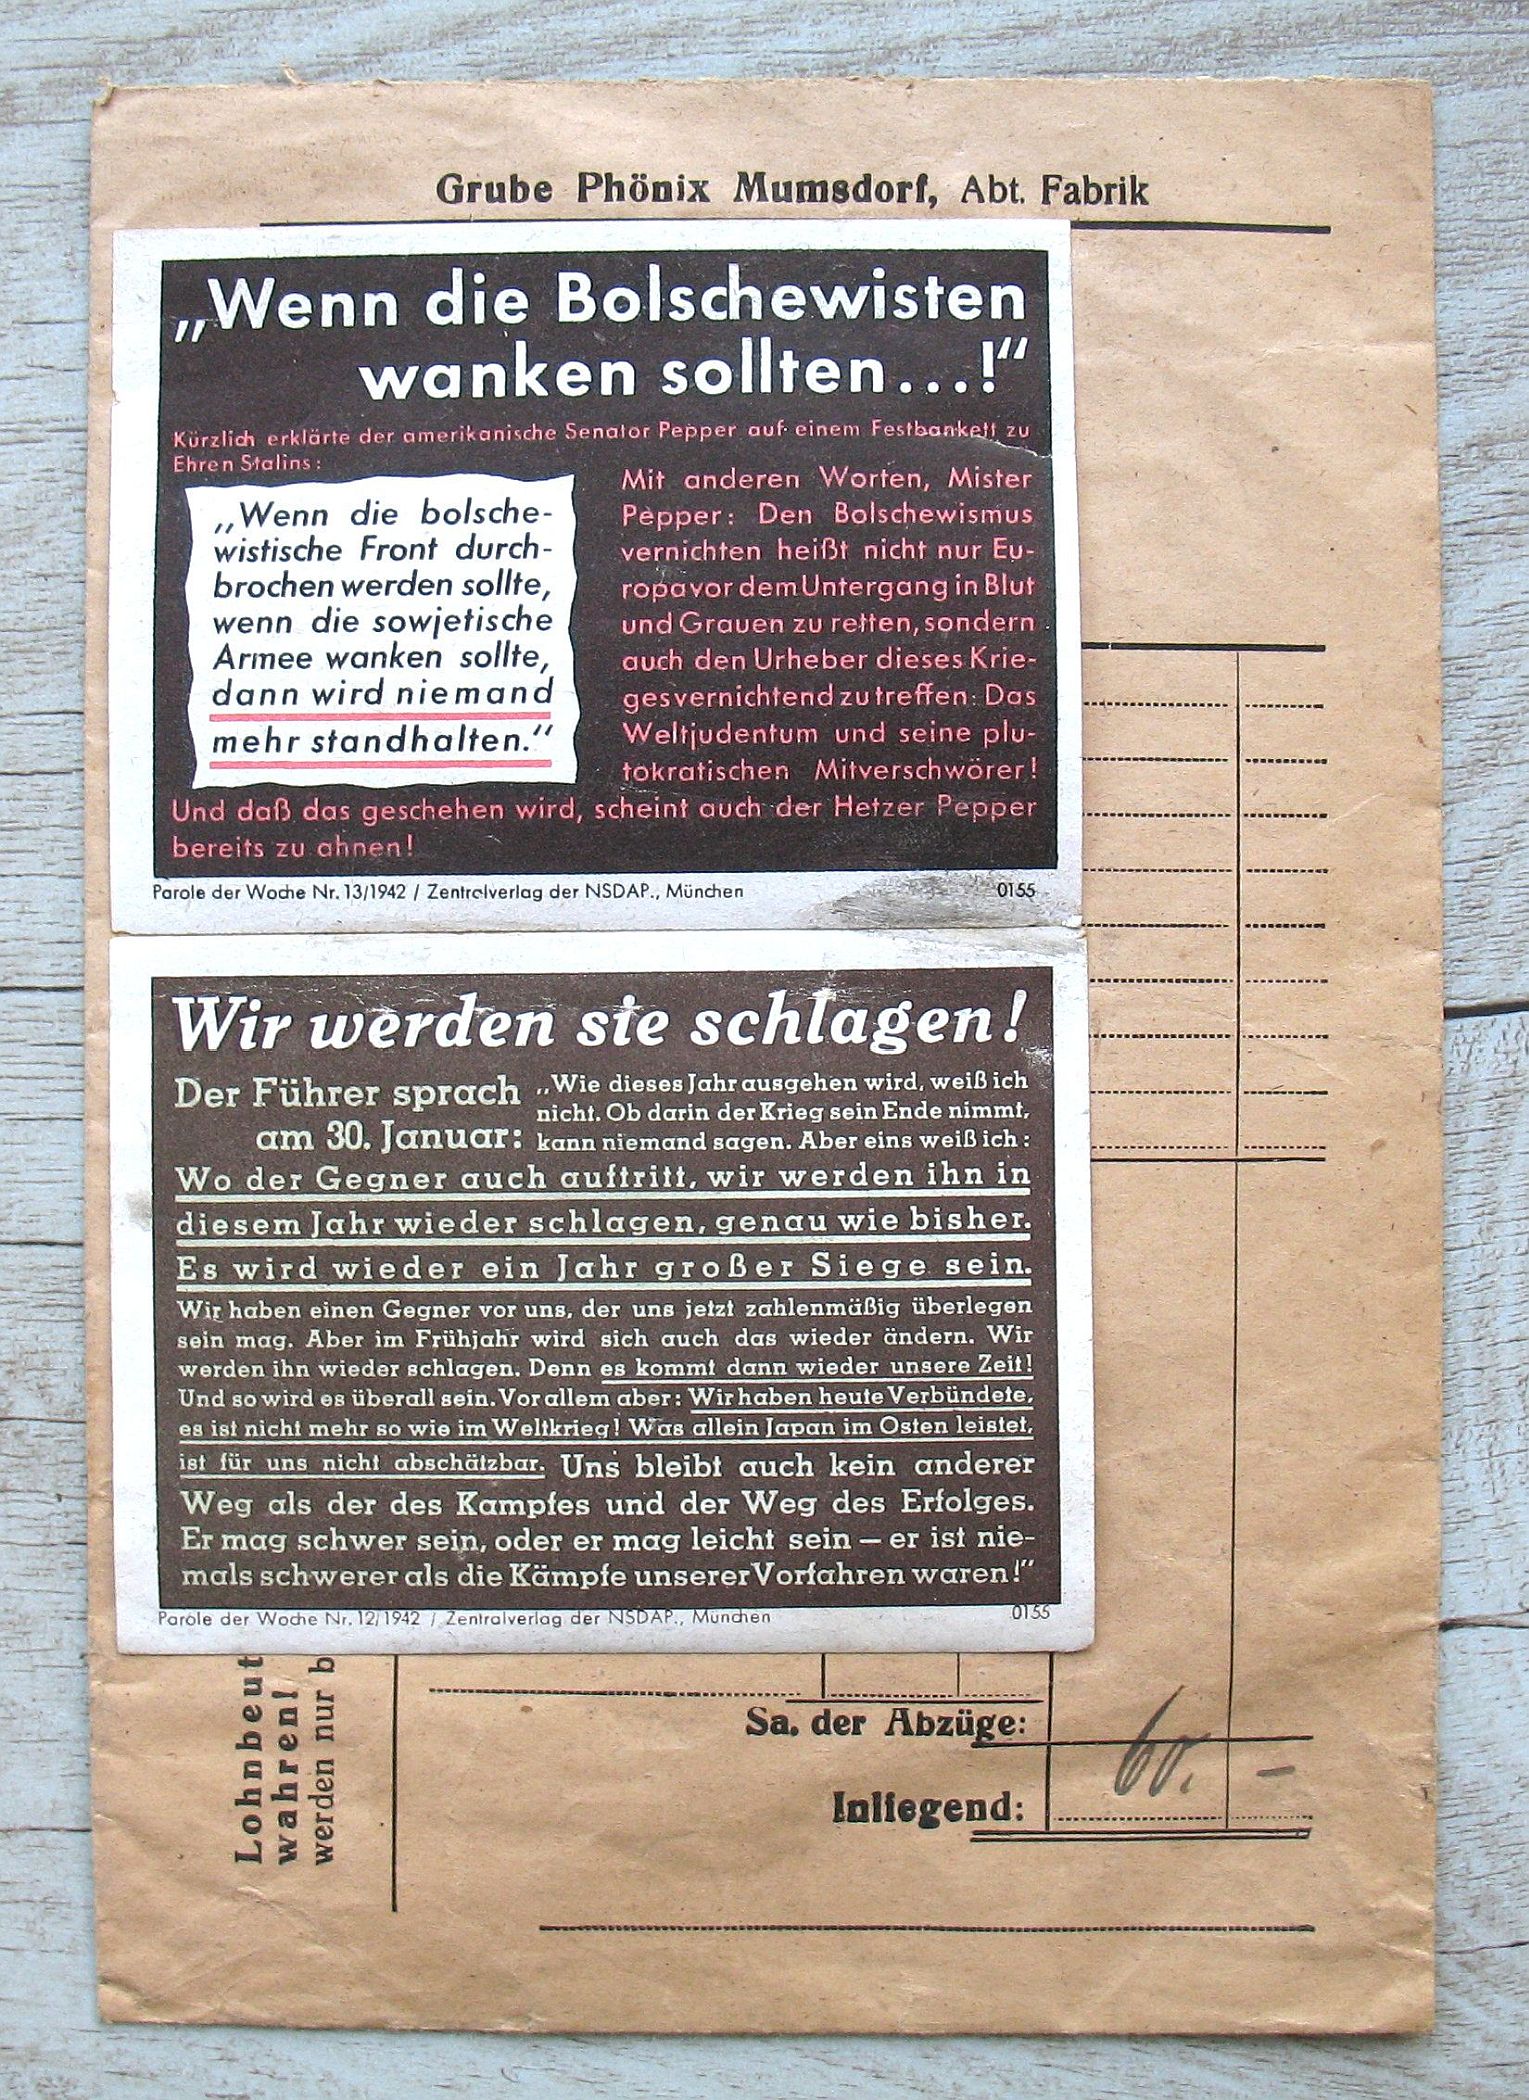 Die Nationalsozialisten nutzen die Lohntüten, um ihre Propaganda zu verbreiten, wie auf dieser Tüte aus dem Jahr 1942./ LWL/Thier